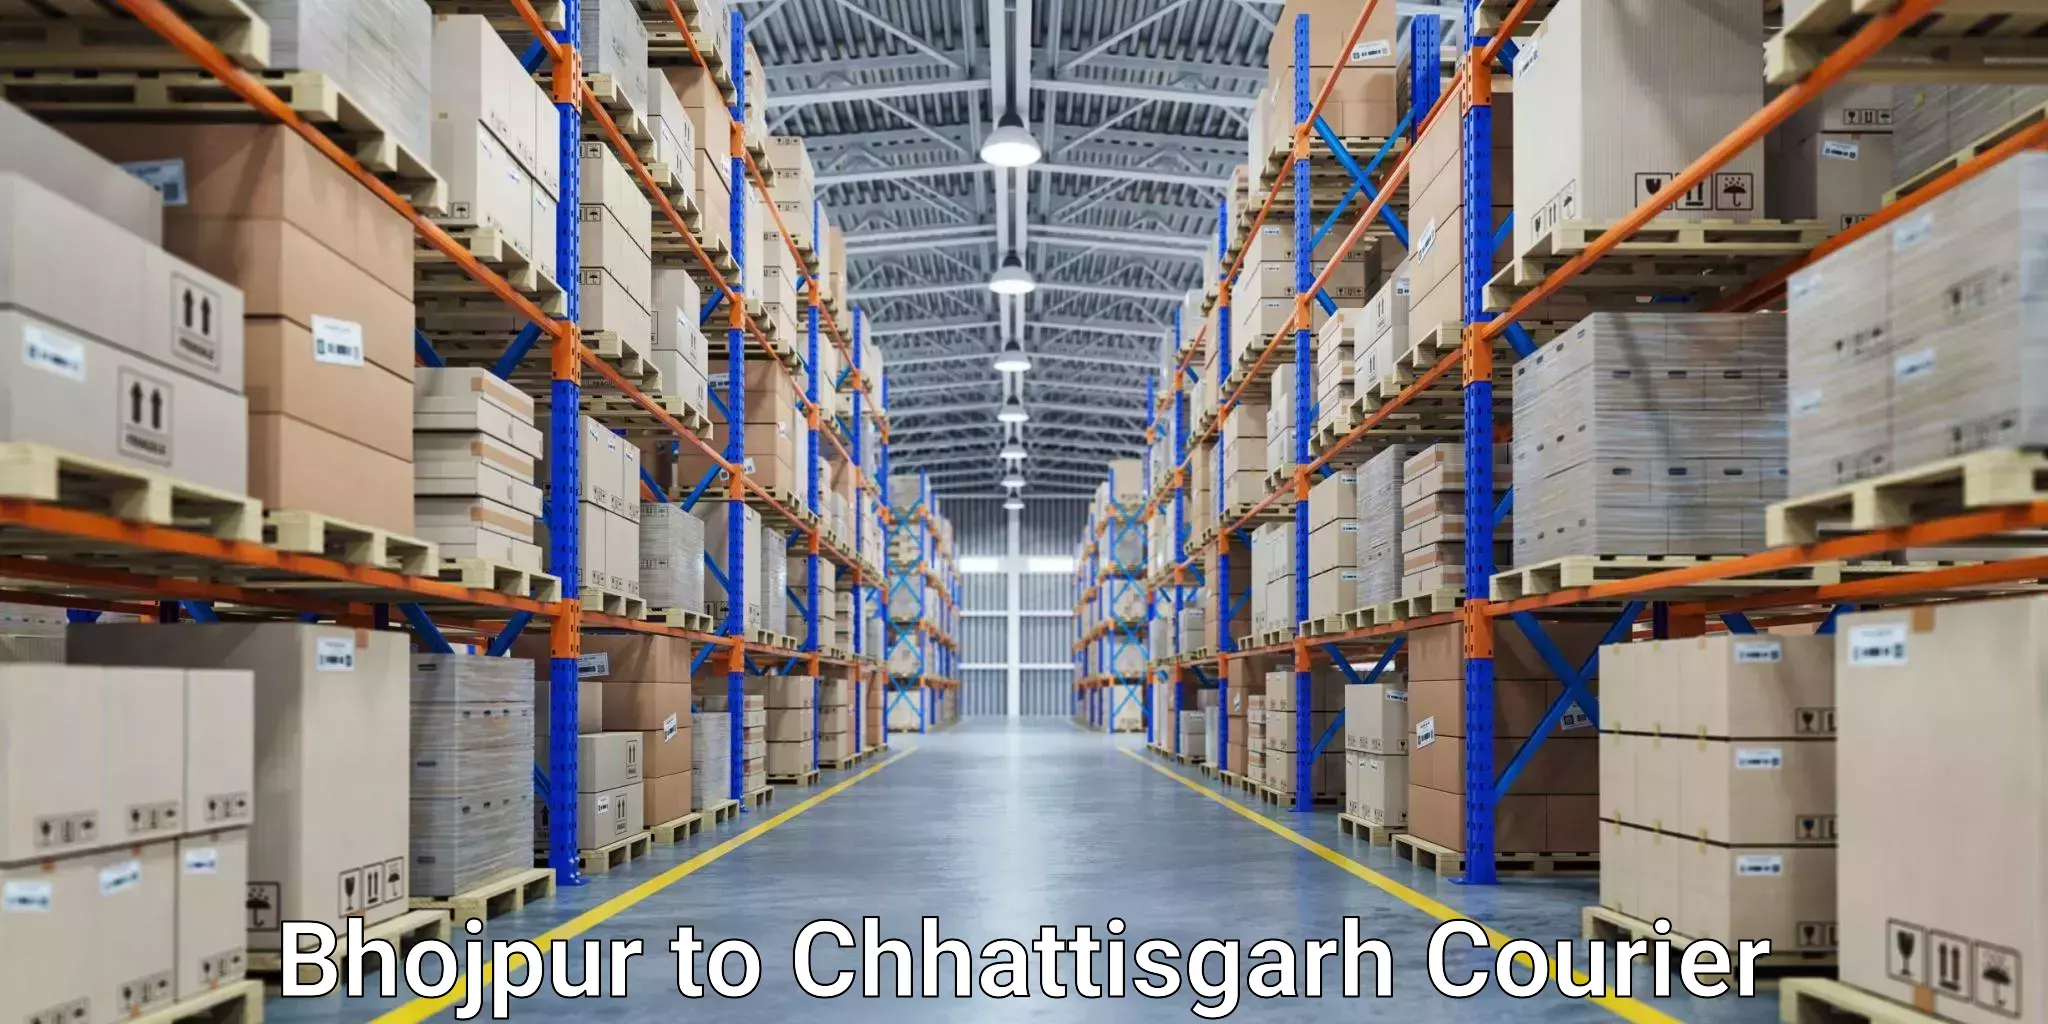 24-hour courier services Bhojpur to Raigarh Chhattisgarh